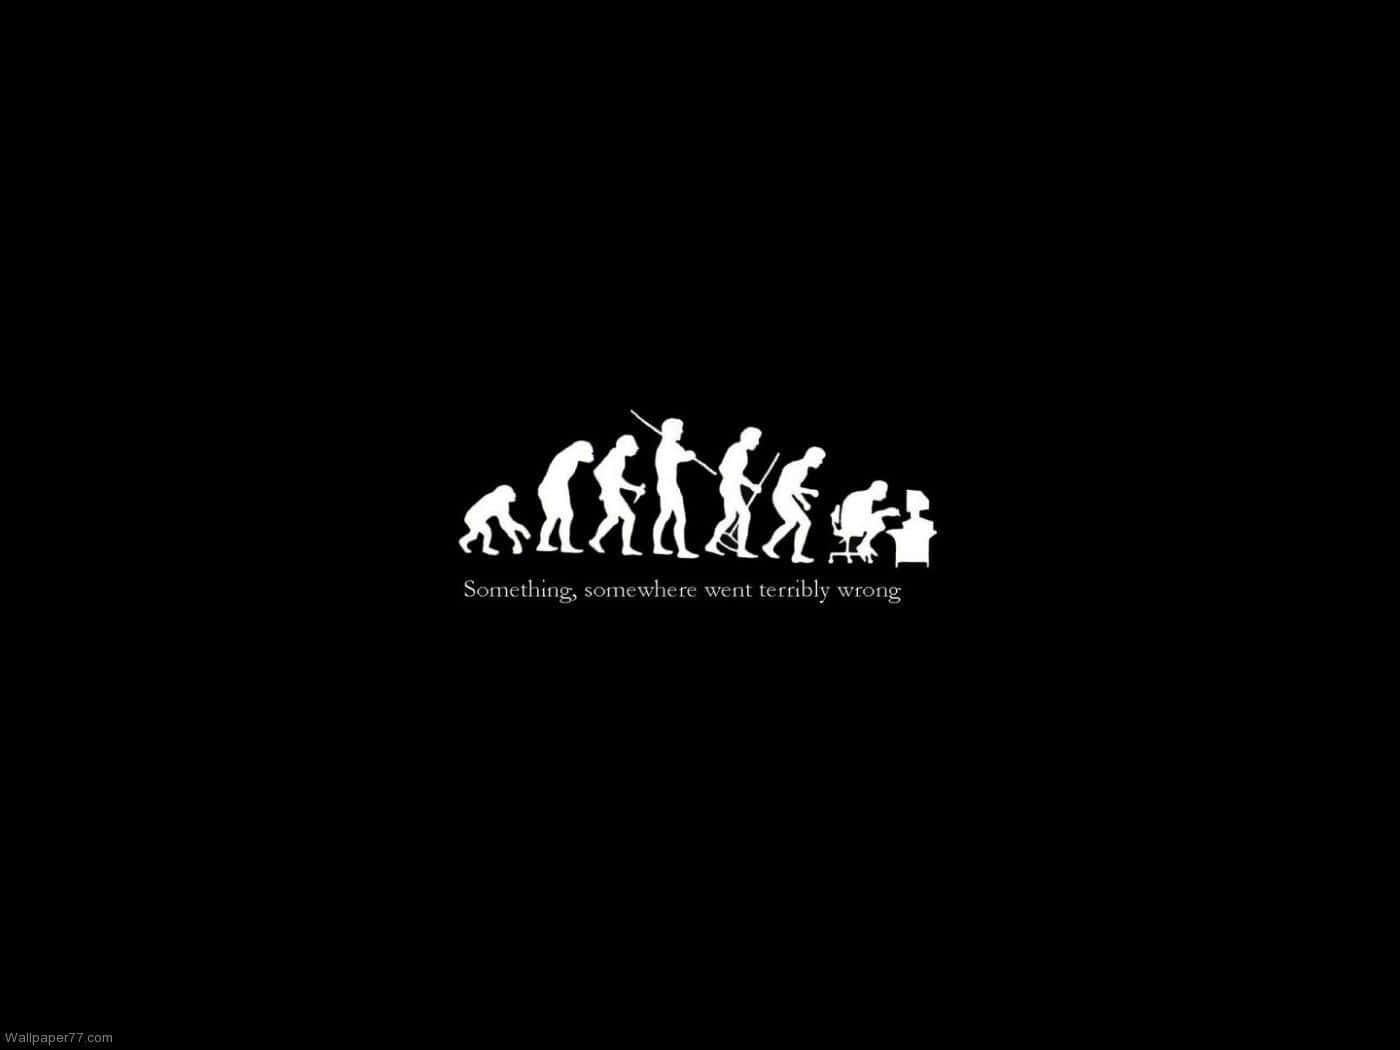 Evolution Of Man Wallpaper, Black And White, Evolution Of Man, Evolution Of Man, Evolution Of Man, Evolution Of Man, Evolution Of Man, Evolution Of Man Wallpaper